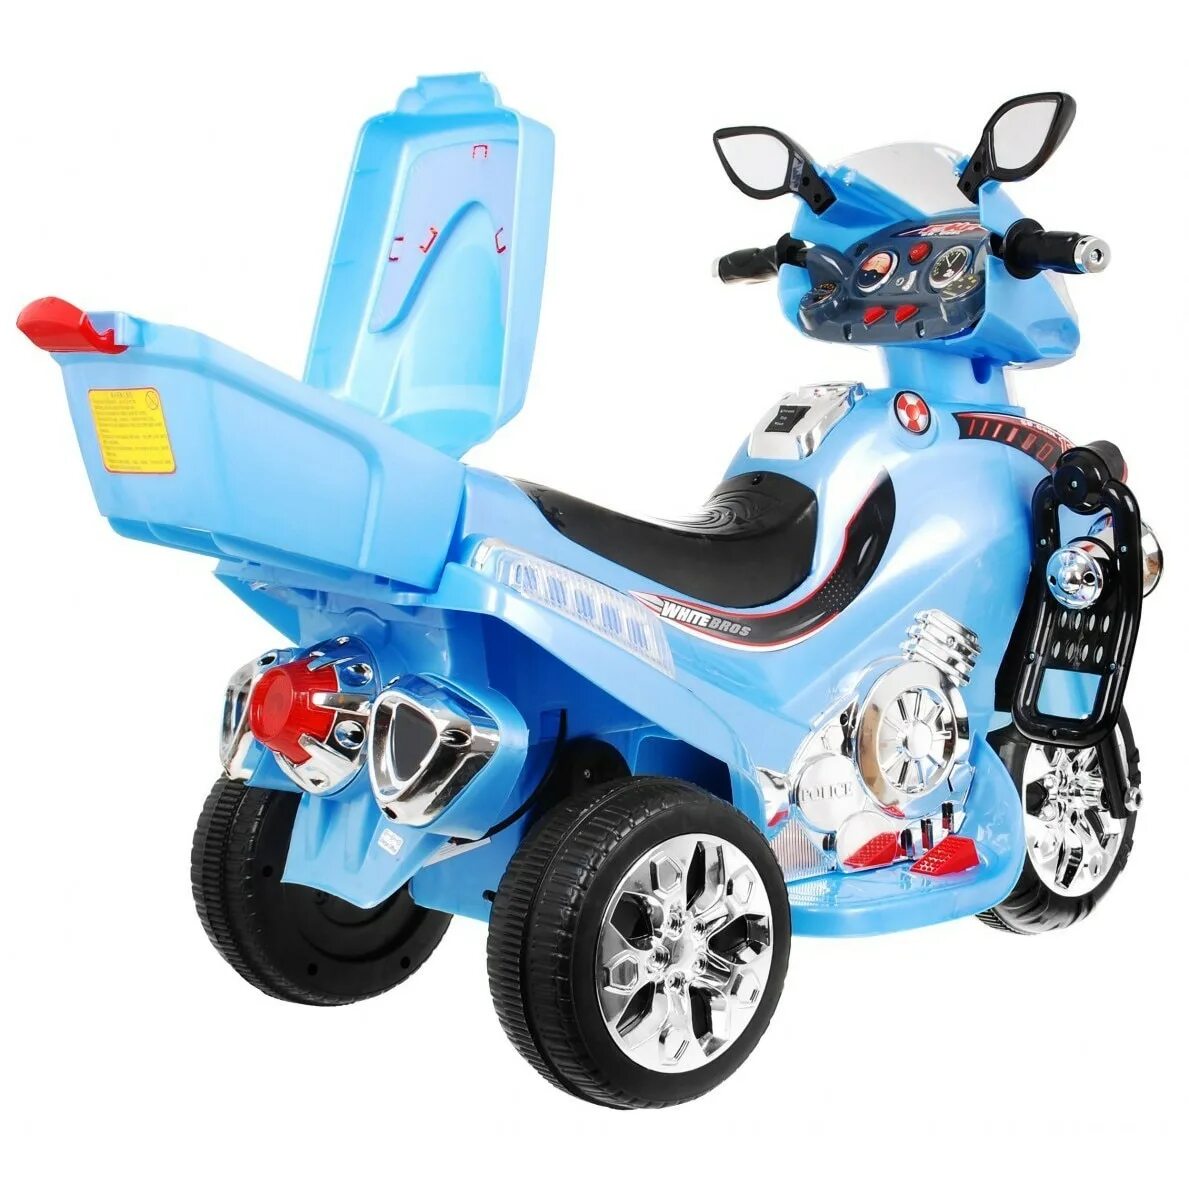 Детский мотоцикл на аккумуляторе FMF. Детский мотоцикл QTKE на аккумуляторе. Мотоцикл детский на аккумуляторе 8999ж198м. Купить детский мопед